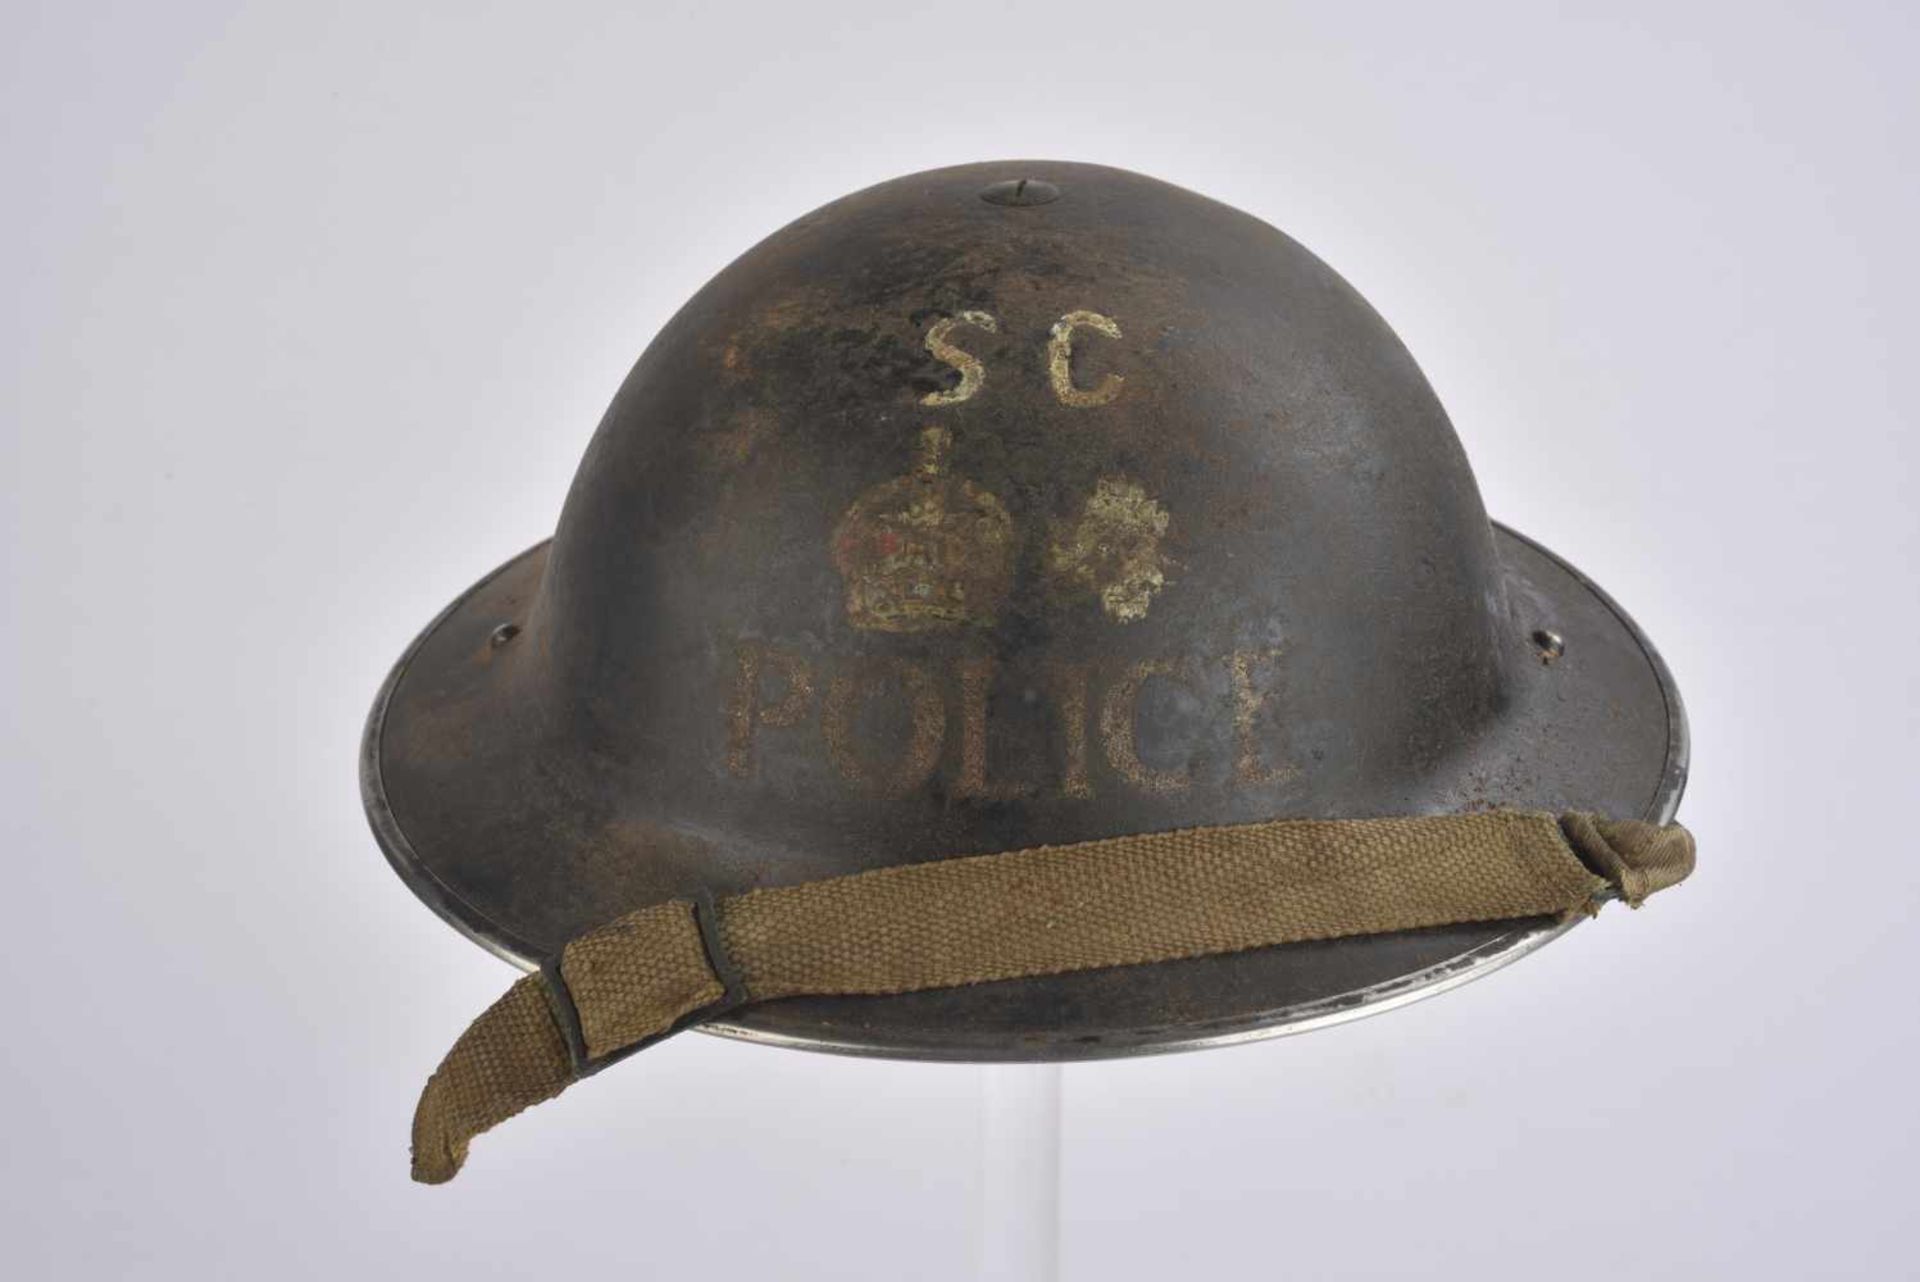 Casque MK II de Lieutenant Colonel de la Police Coque de casque MKII, fabrication RI II HBH 1939.